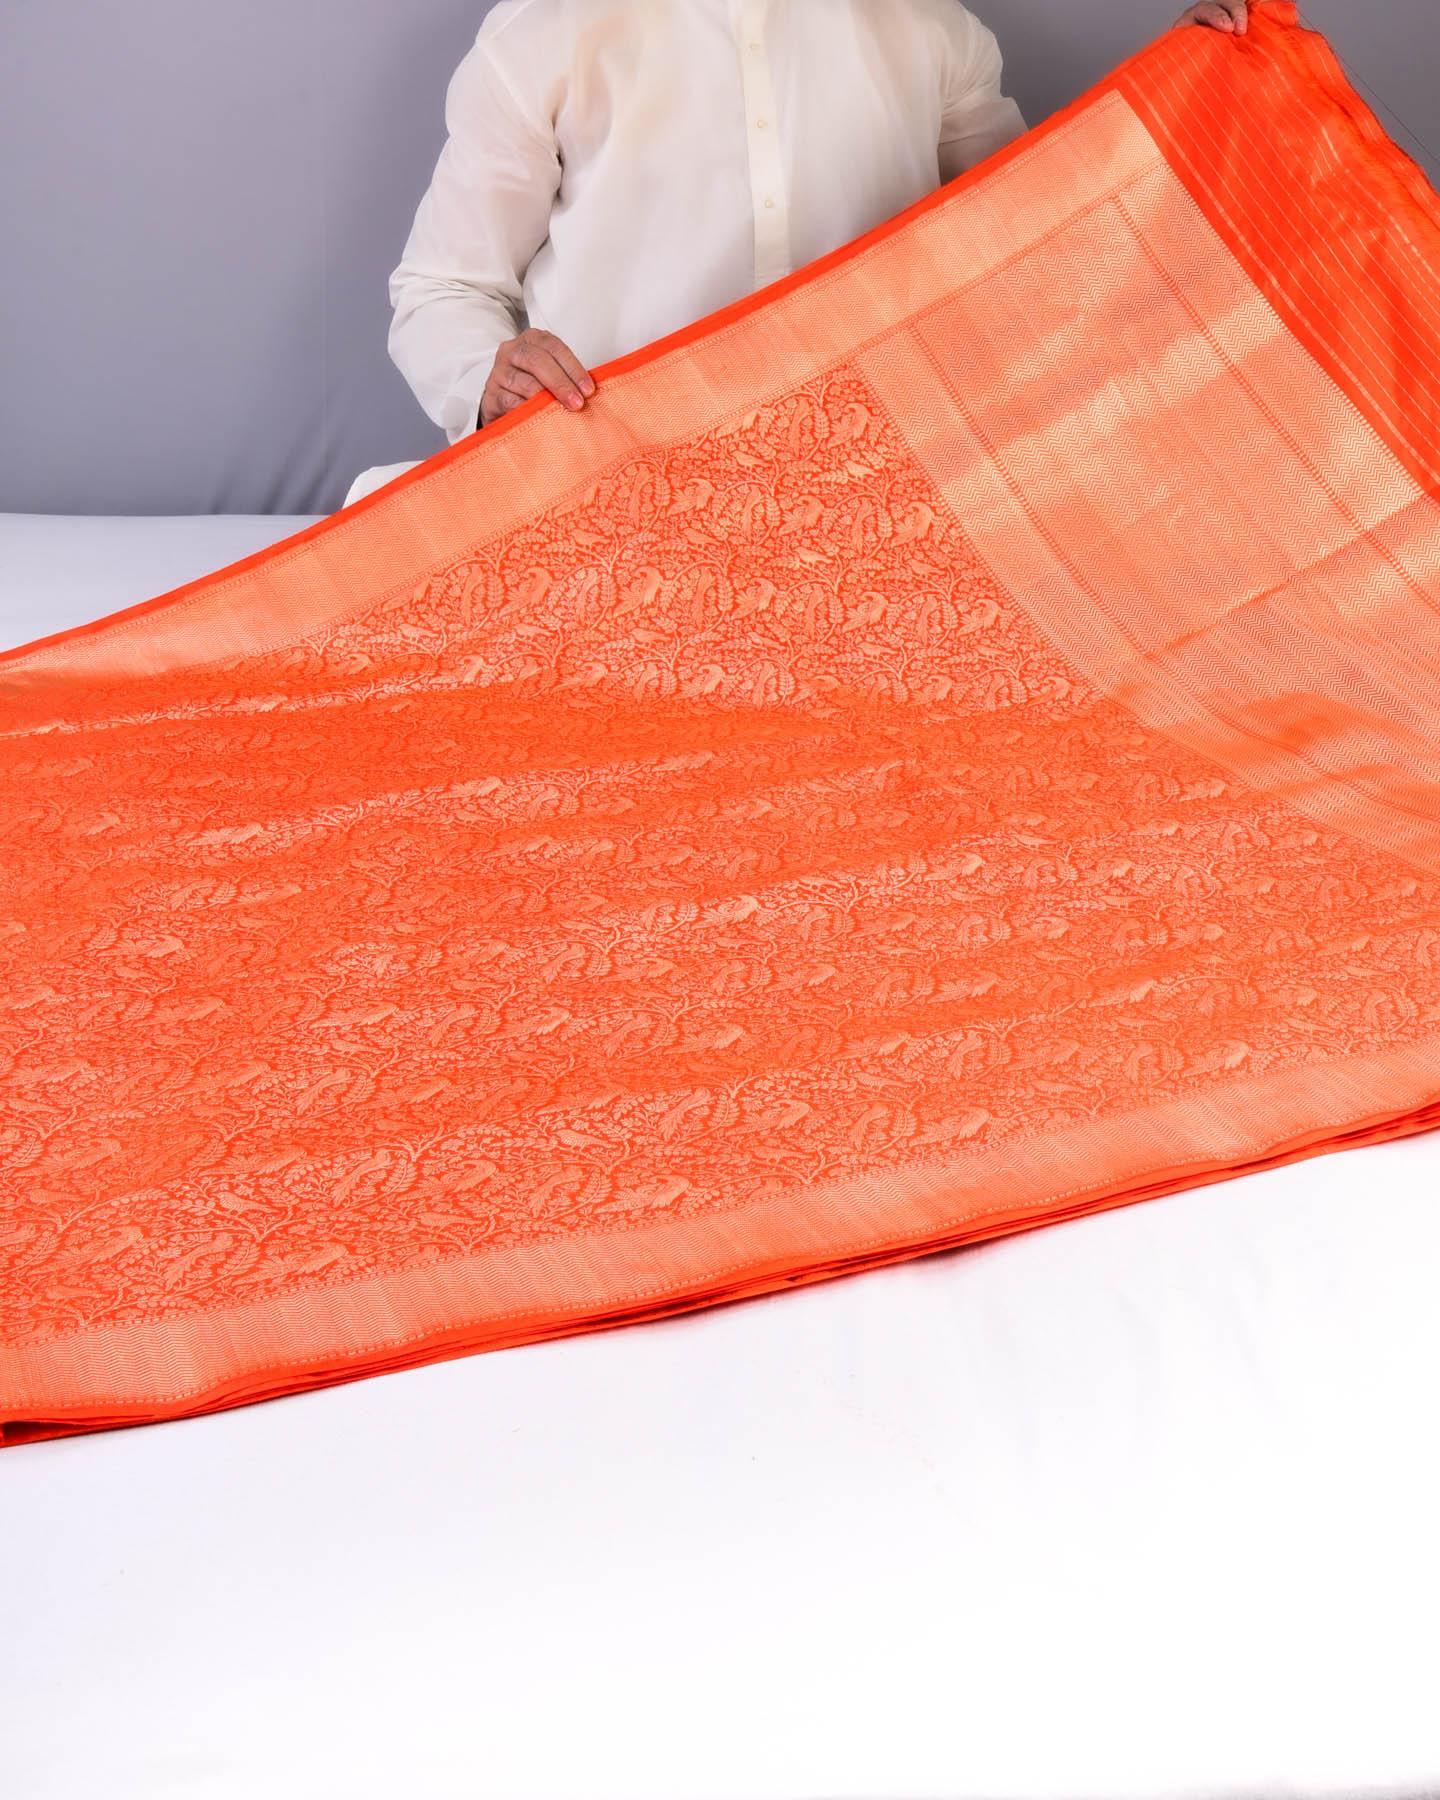 Orange Banarasi Shikargah Brocade Handwoven Katan Silk Saree - By HolyWeaves, Benares